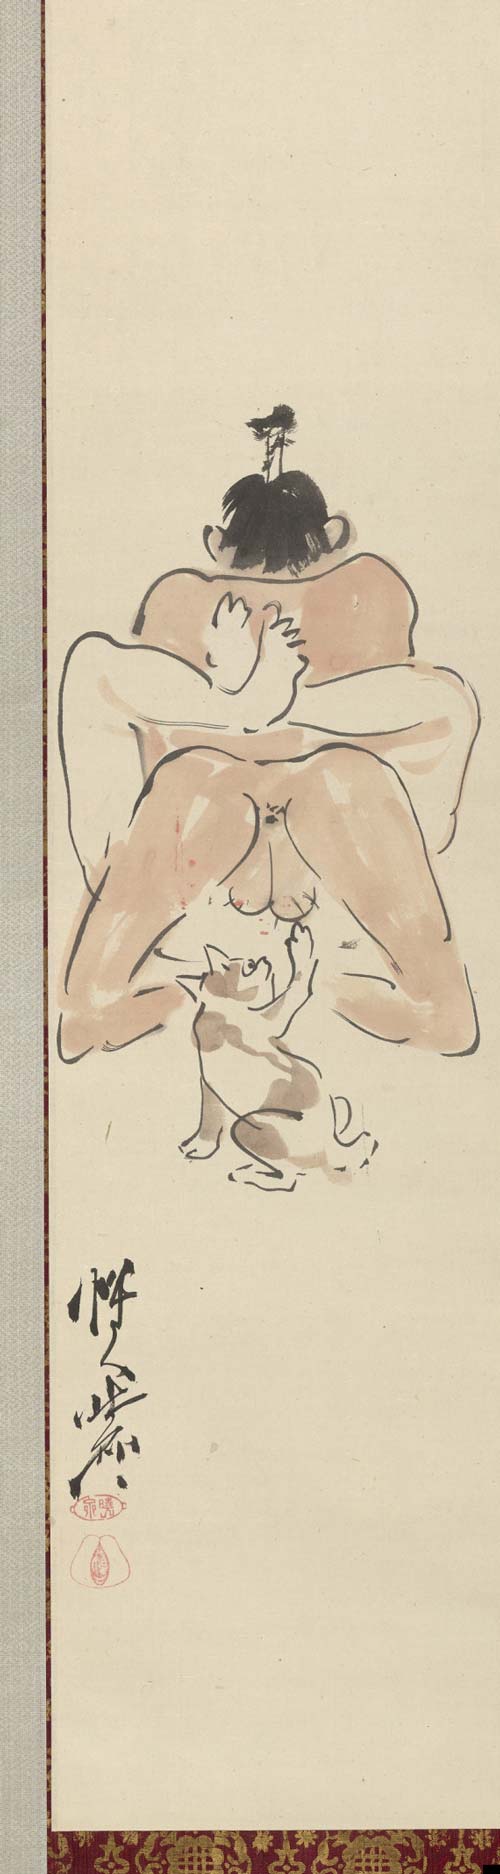 Французская эротическая миниатюра: скрытые пикантные картинки, гравюры, фарфор